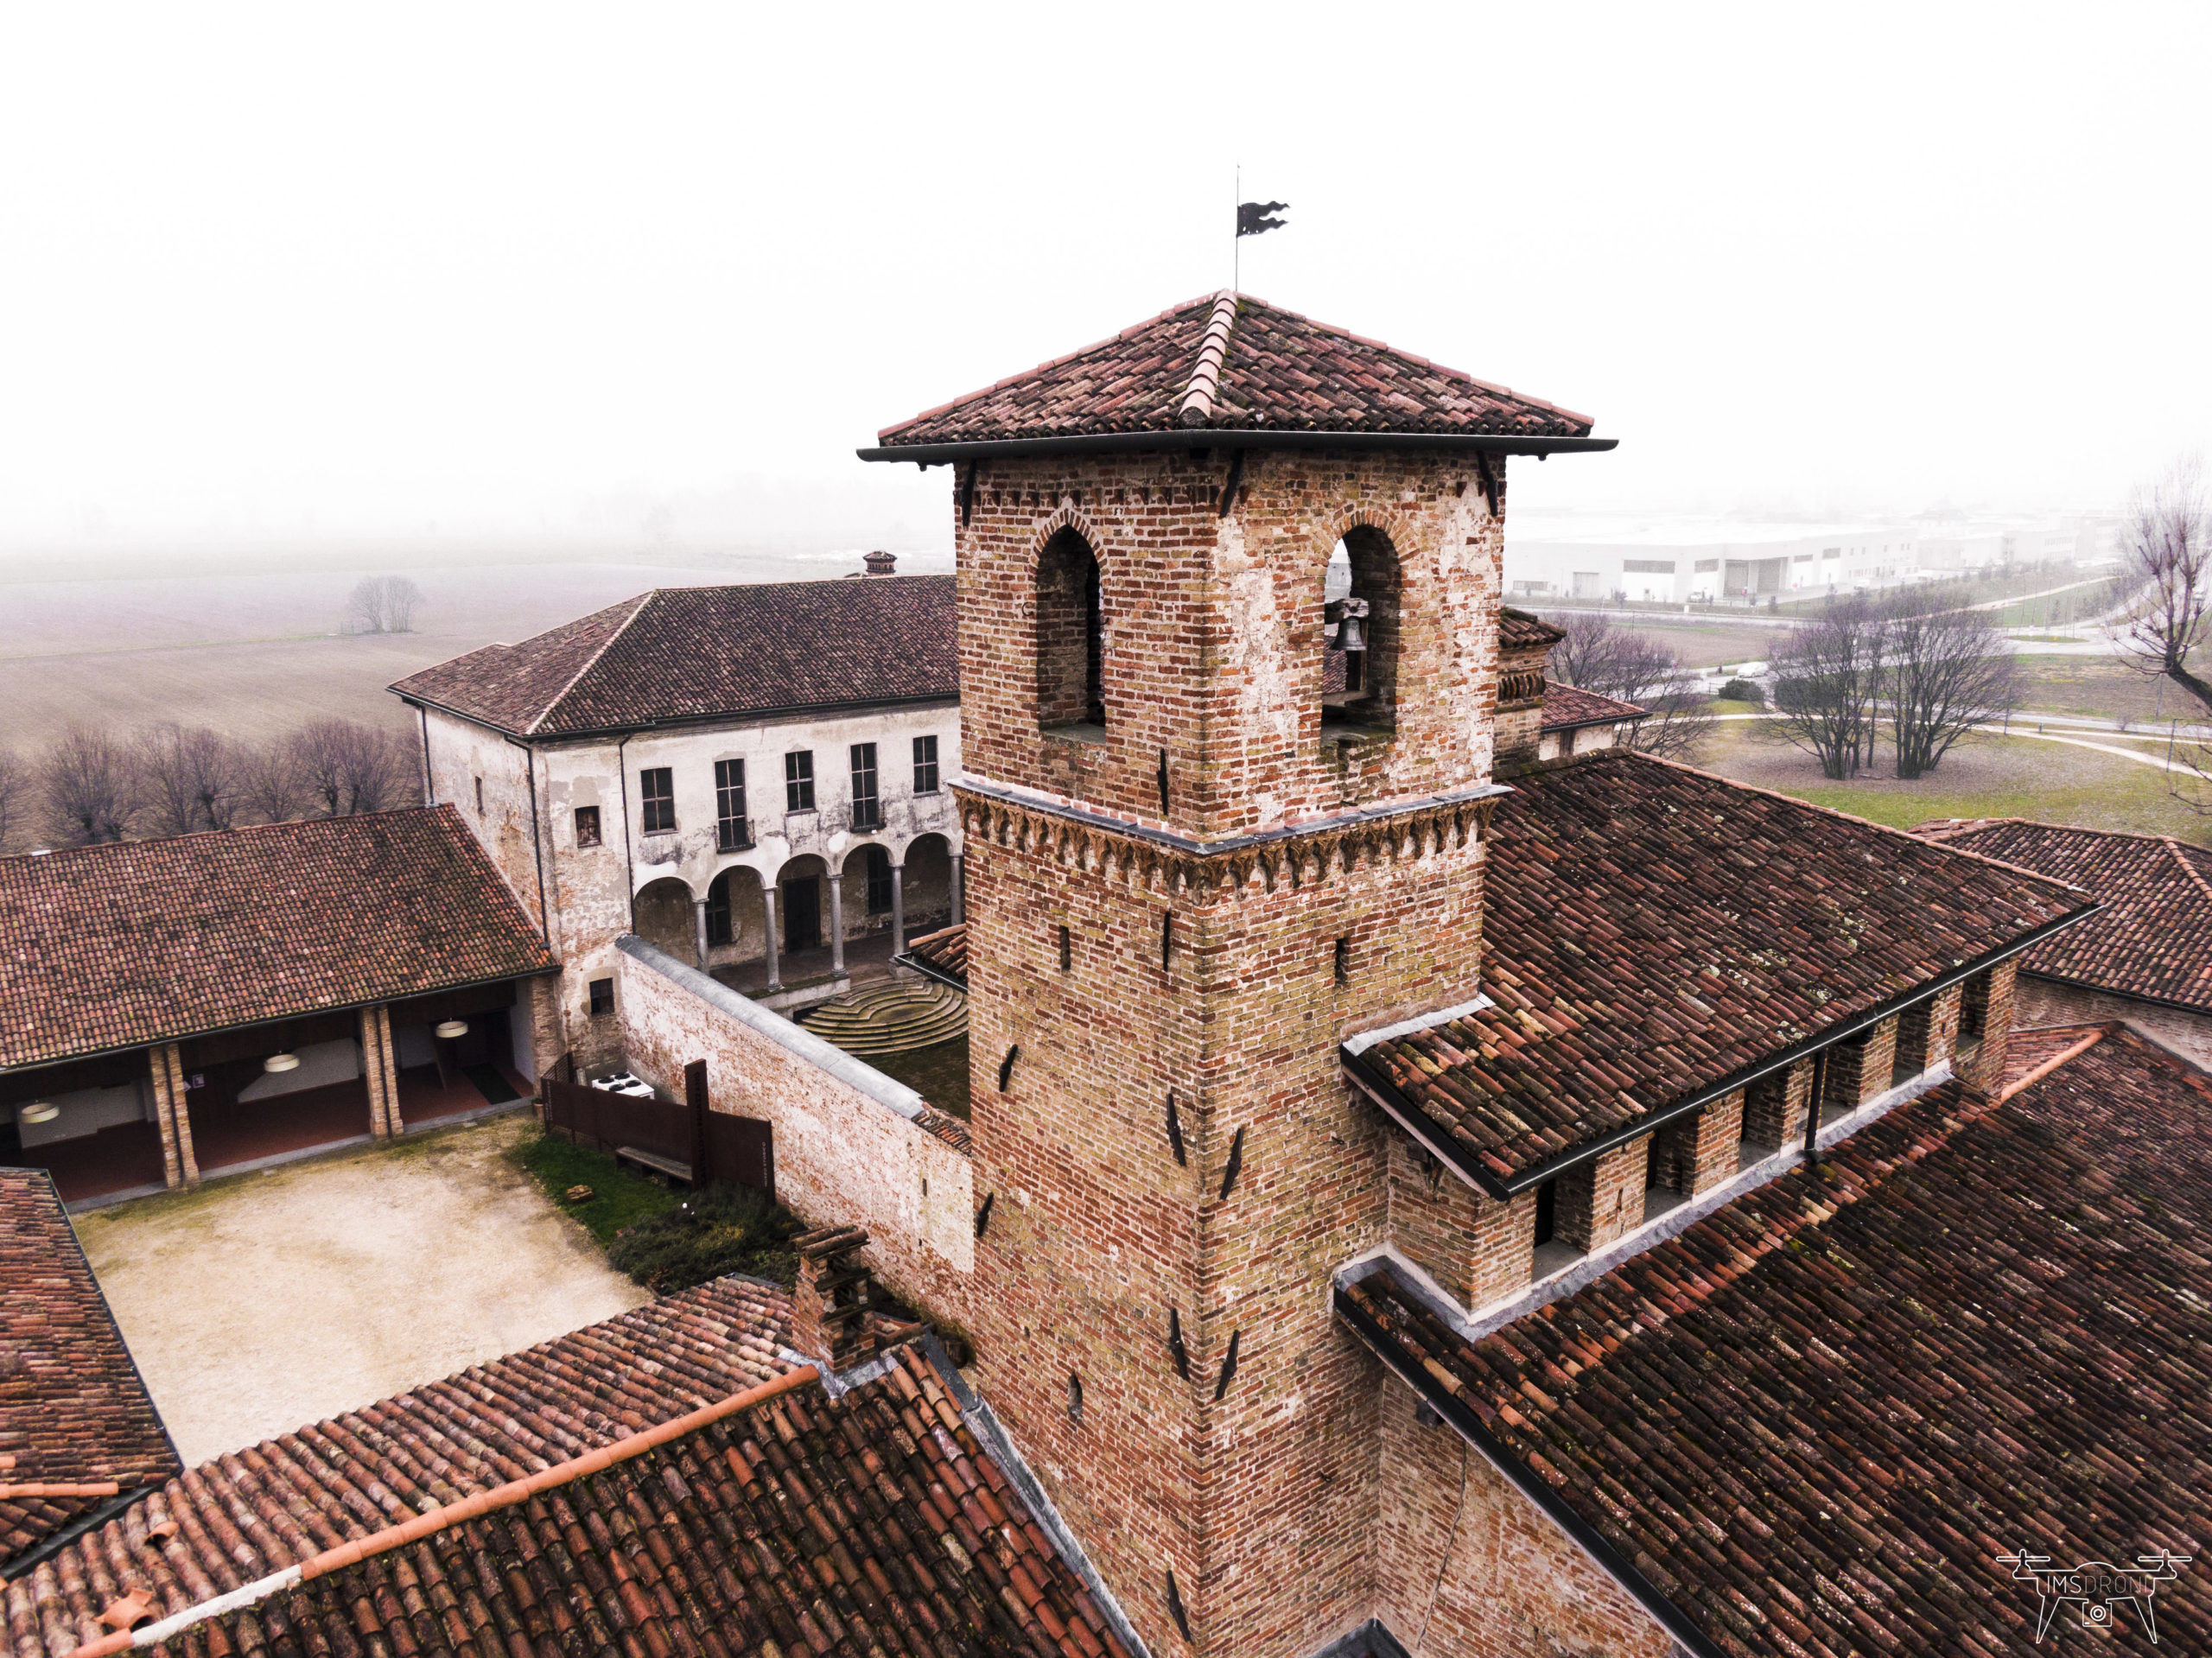 Castello Visconteo di Pagazzano